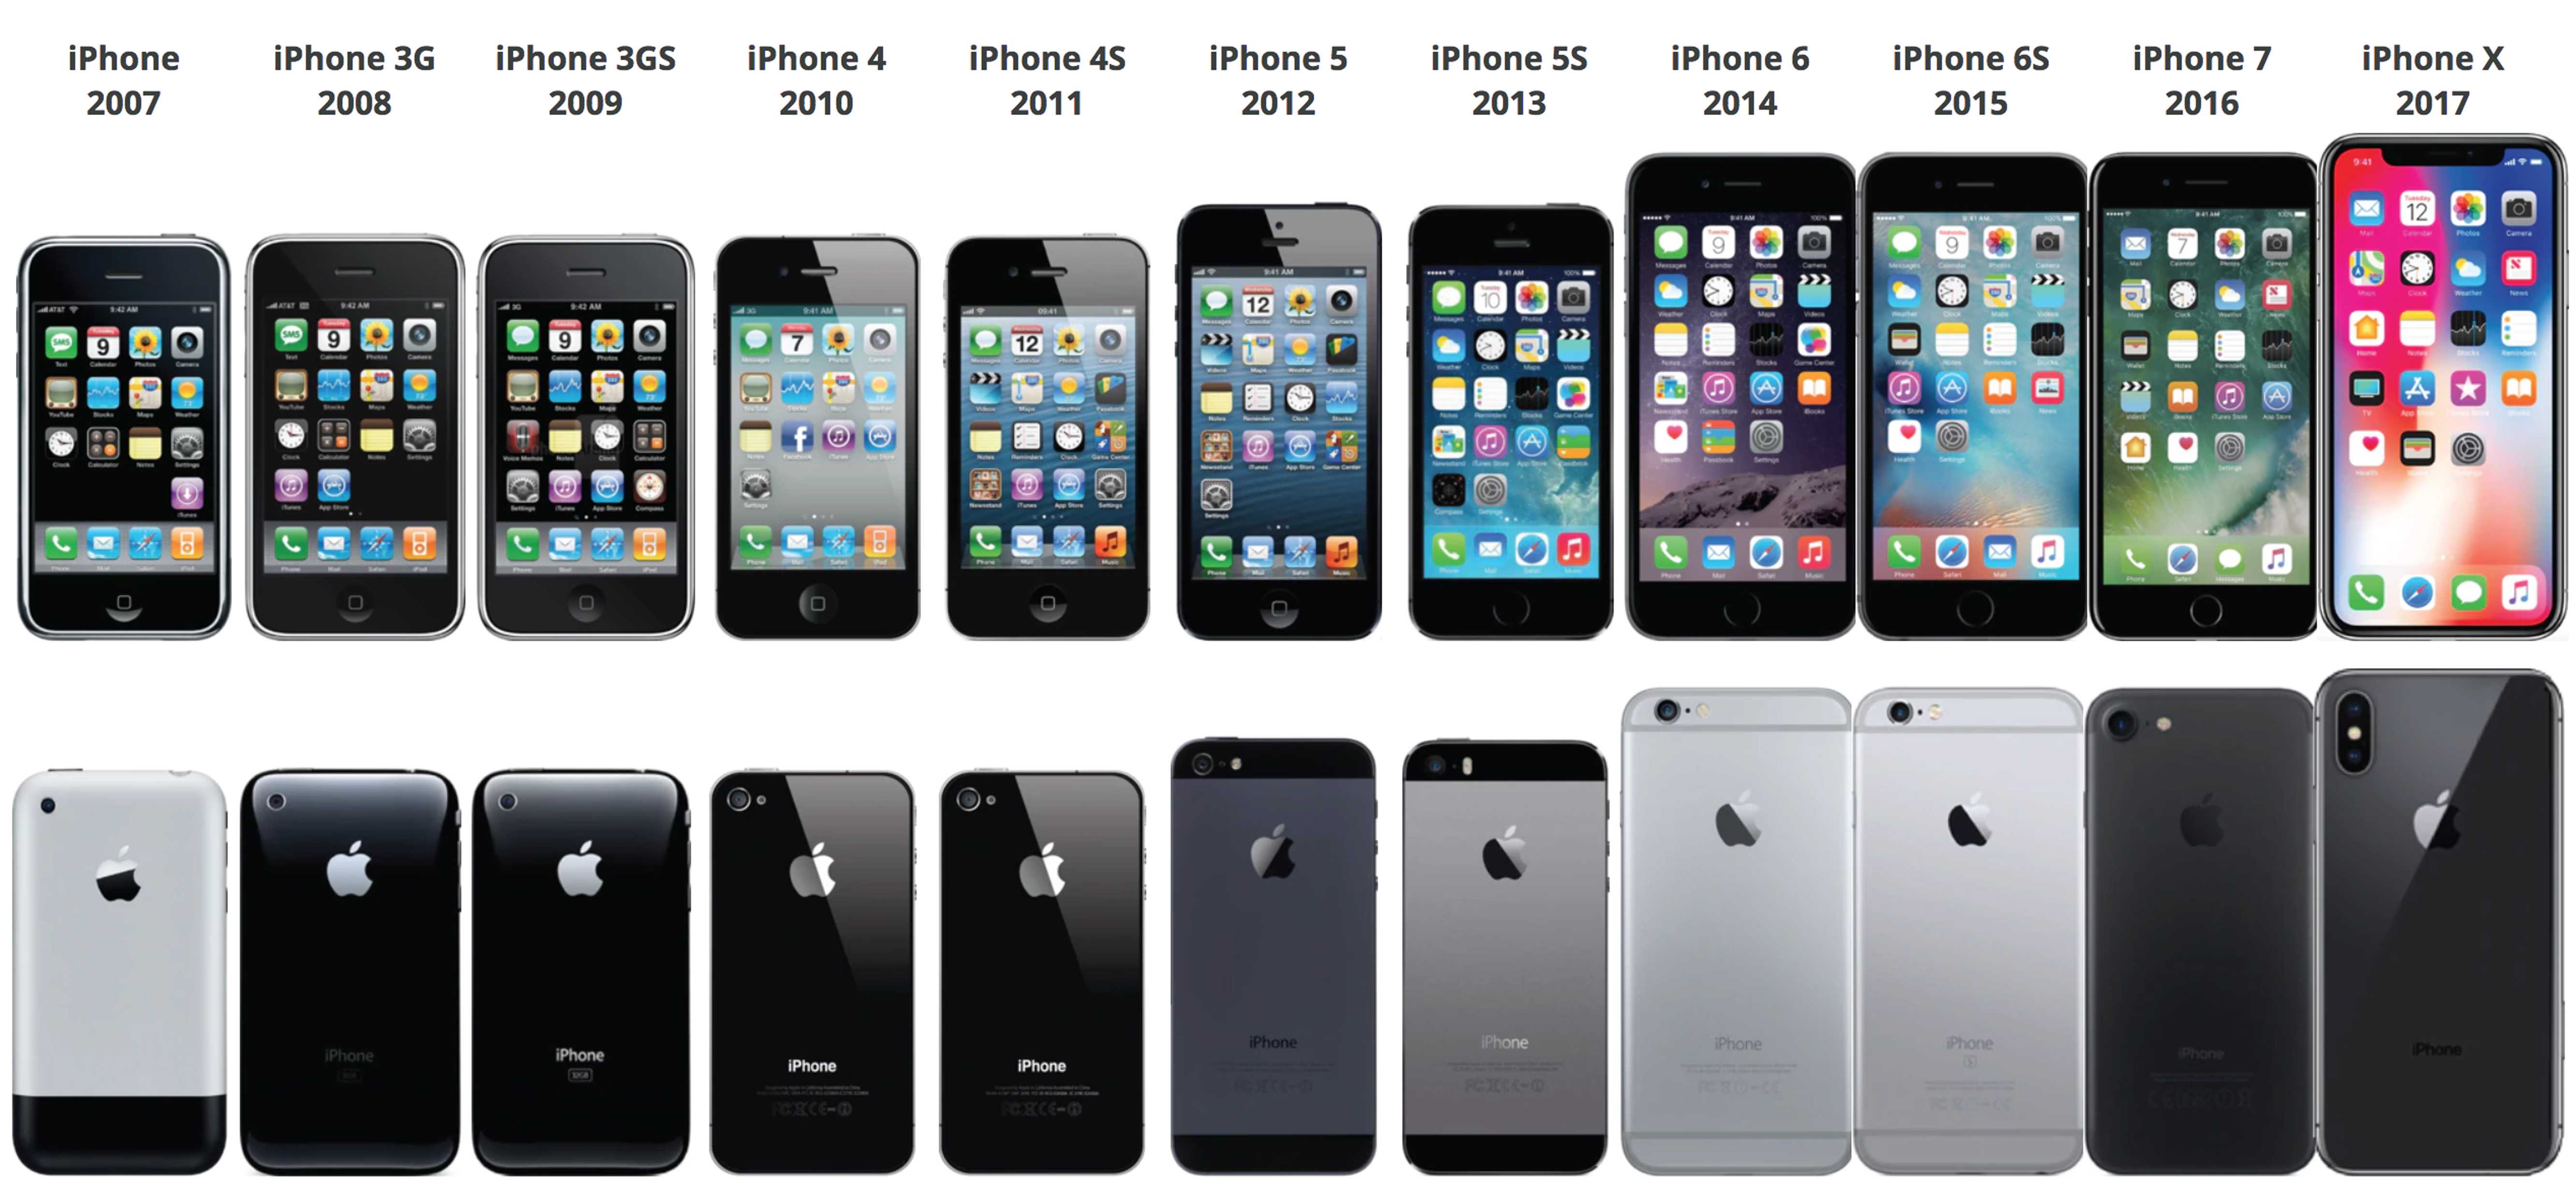 Вспоминаем, в каком году какая модель iPhone вышла: iPhone 2g в 2007 году, iPhone 3g - в 2008 году, iPhone 3GS - в 2009 году, iPhone 4 - в 2010 году, iPhone 4s в 2011 году